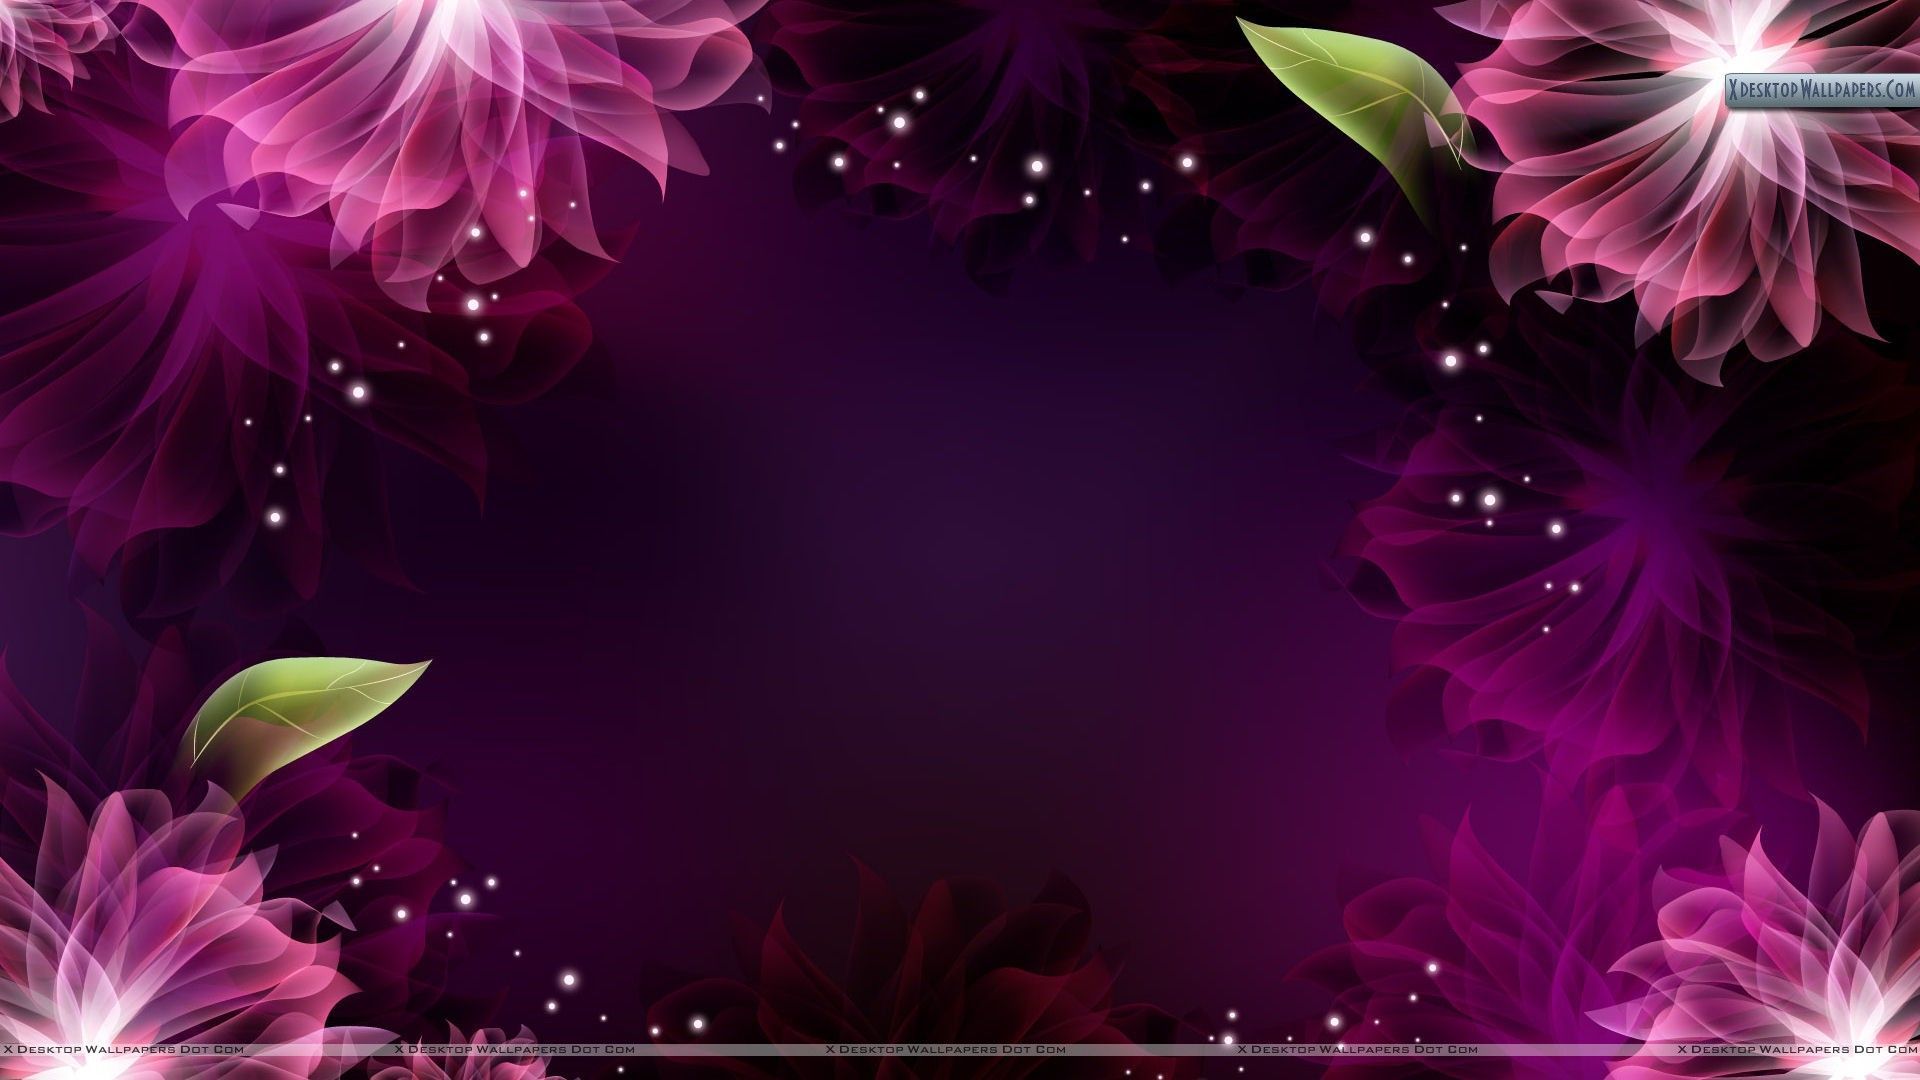 壁紙と背景,バイオレット,ピンク,紫の,花弁,グラフィックデザイン